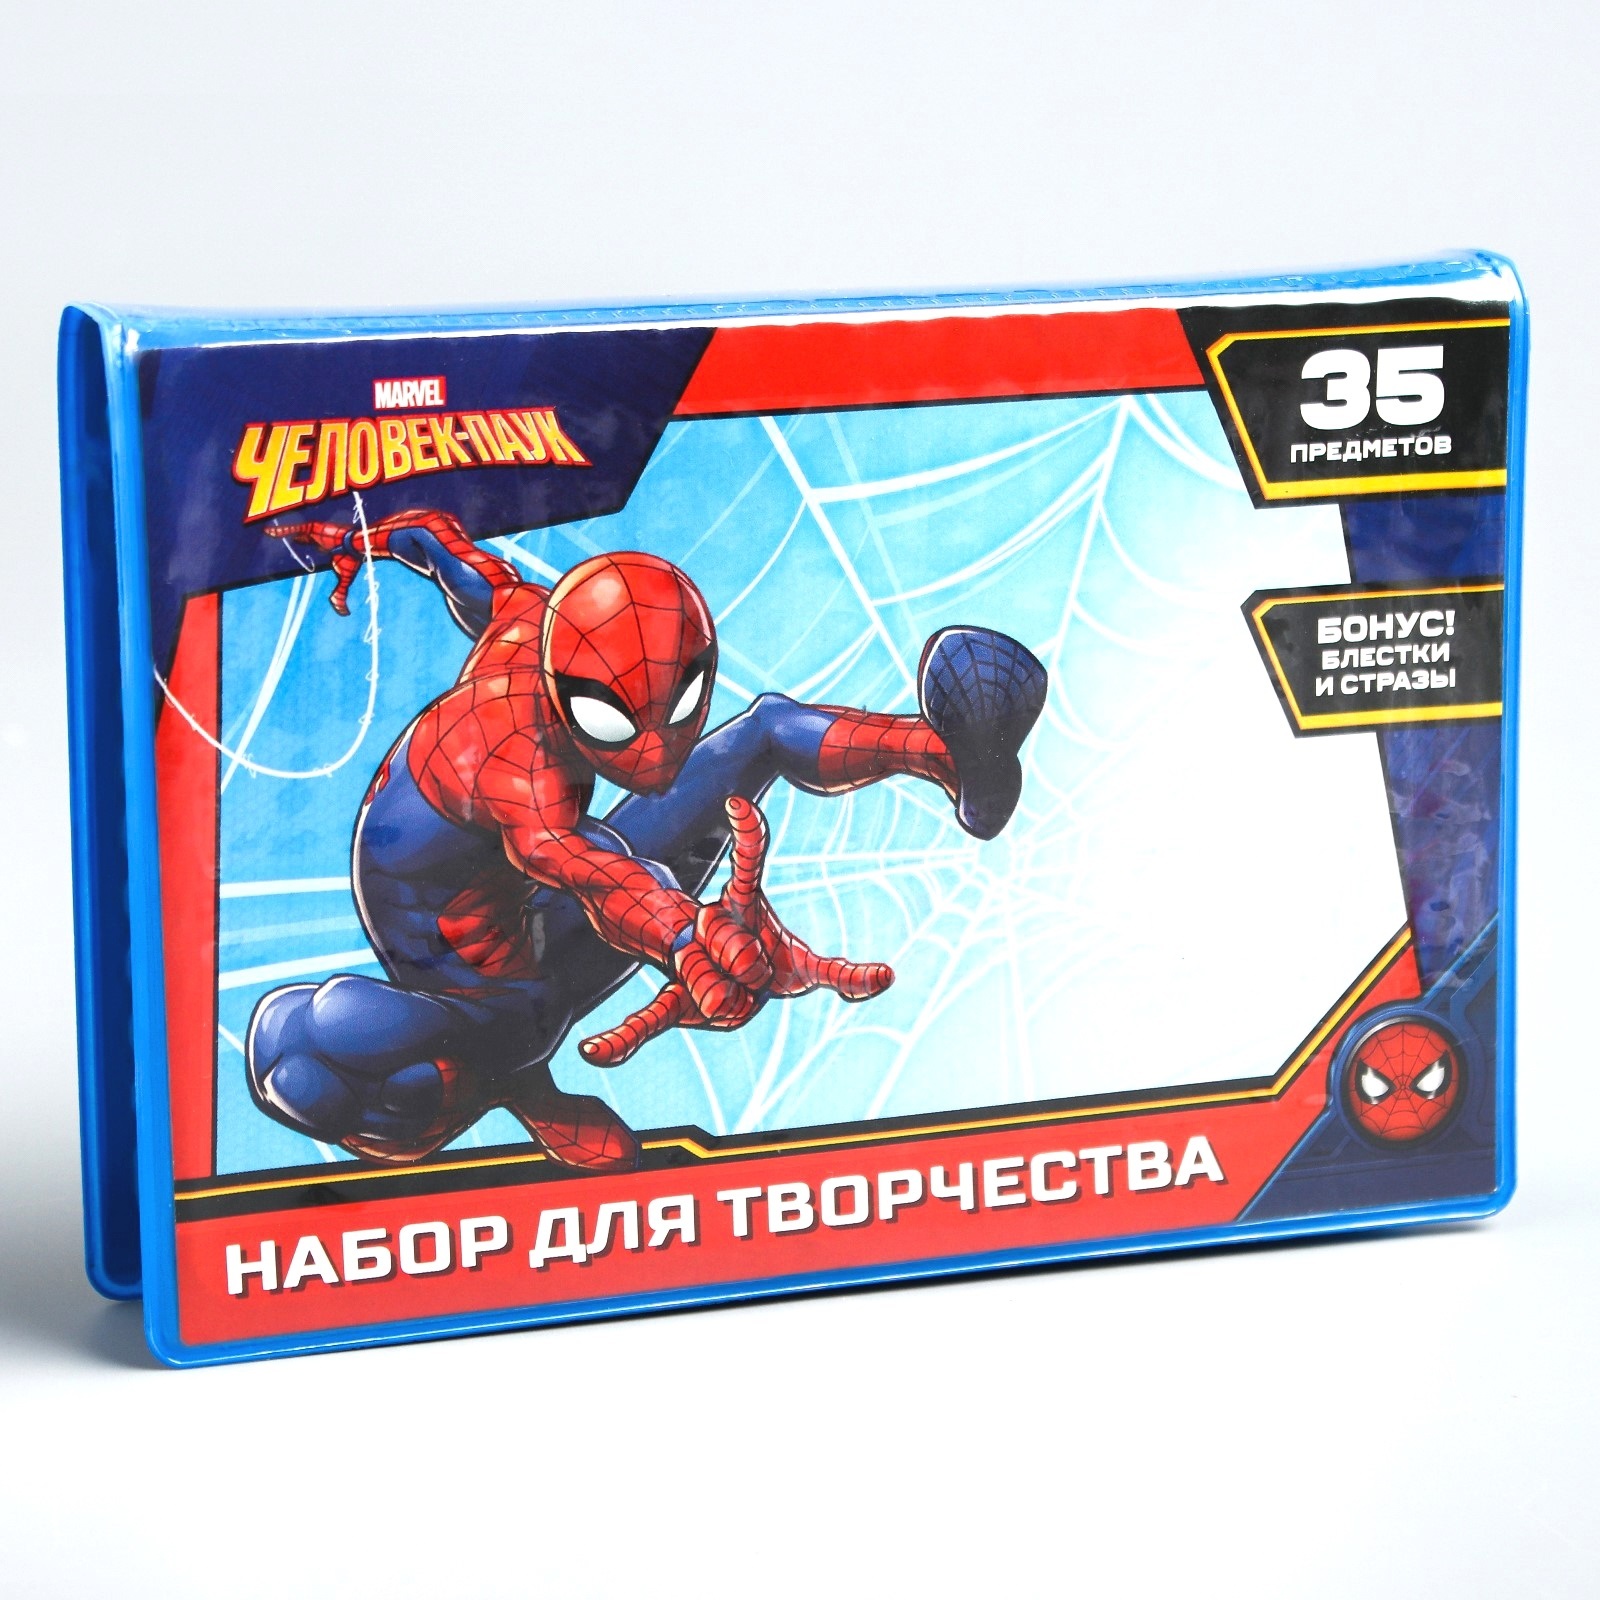 Набор для творчества "Человек-паук" (35 предметов)